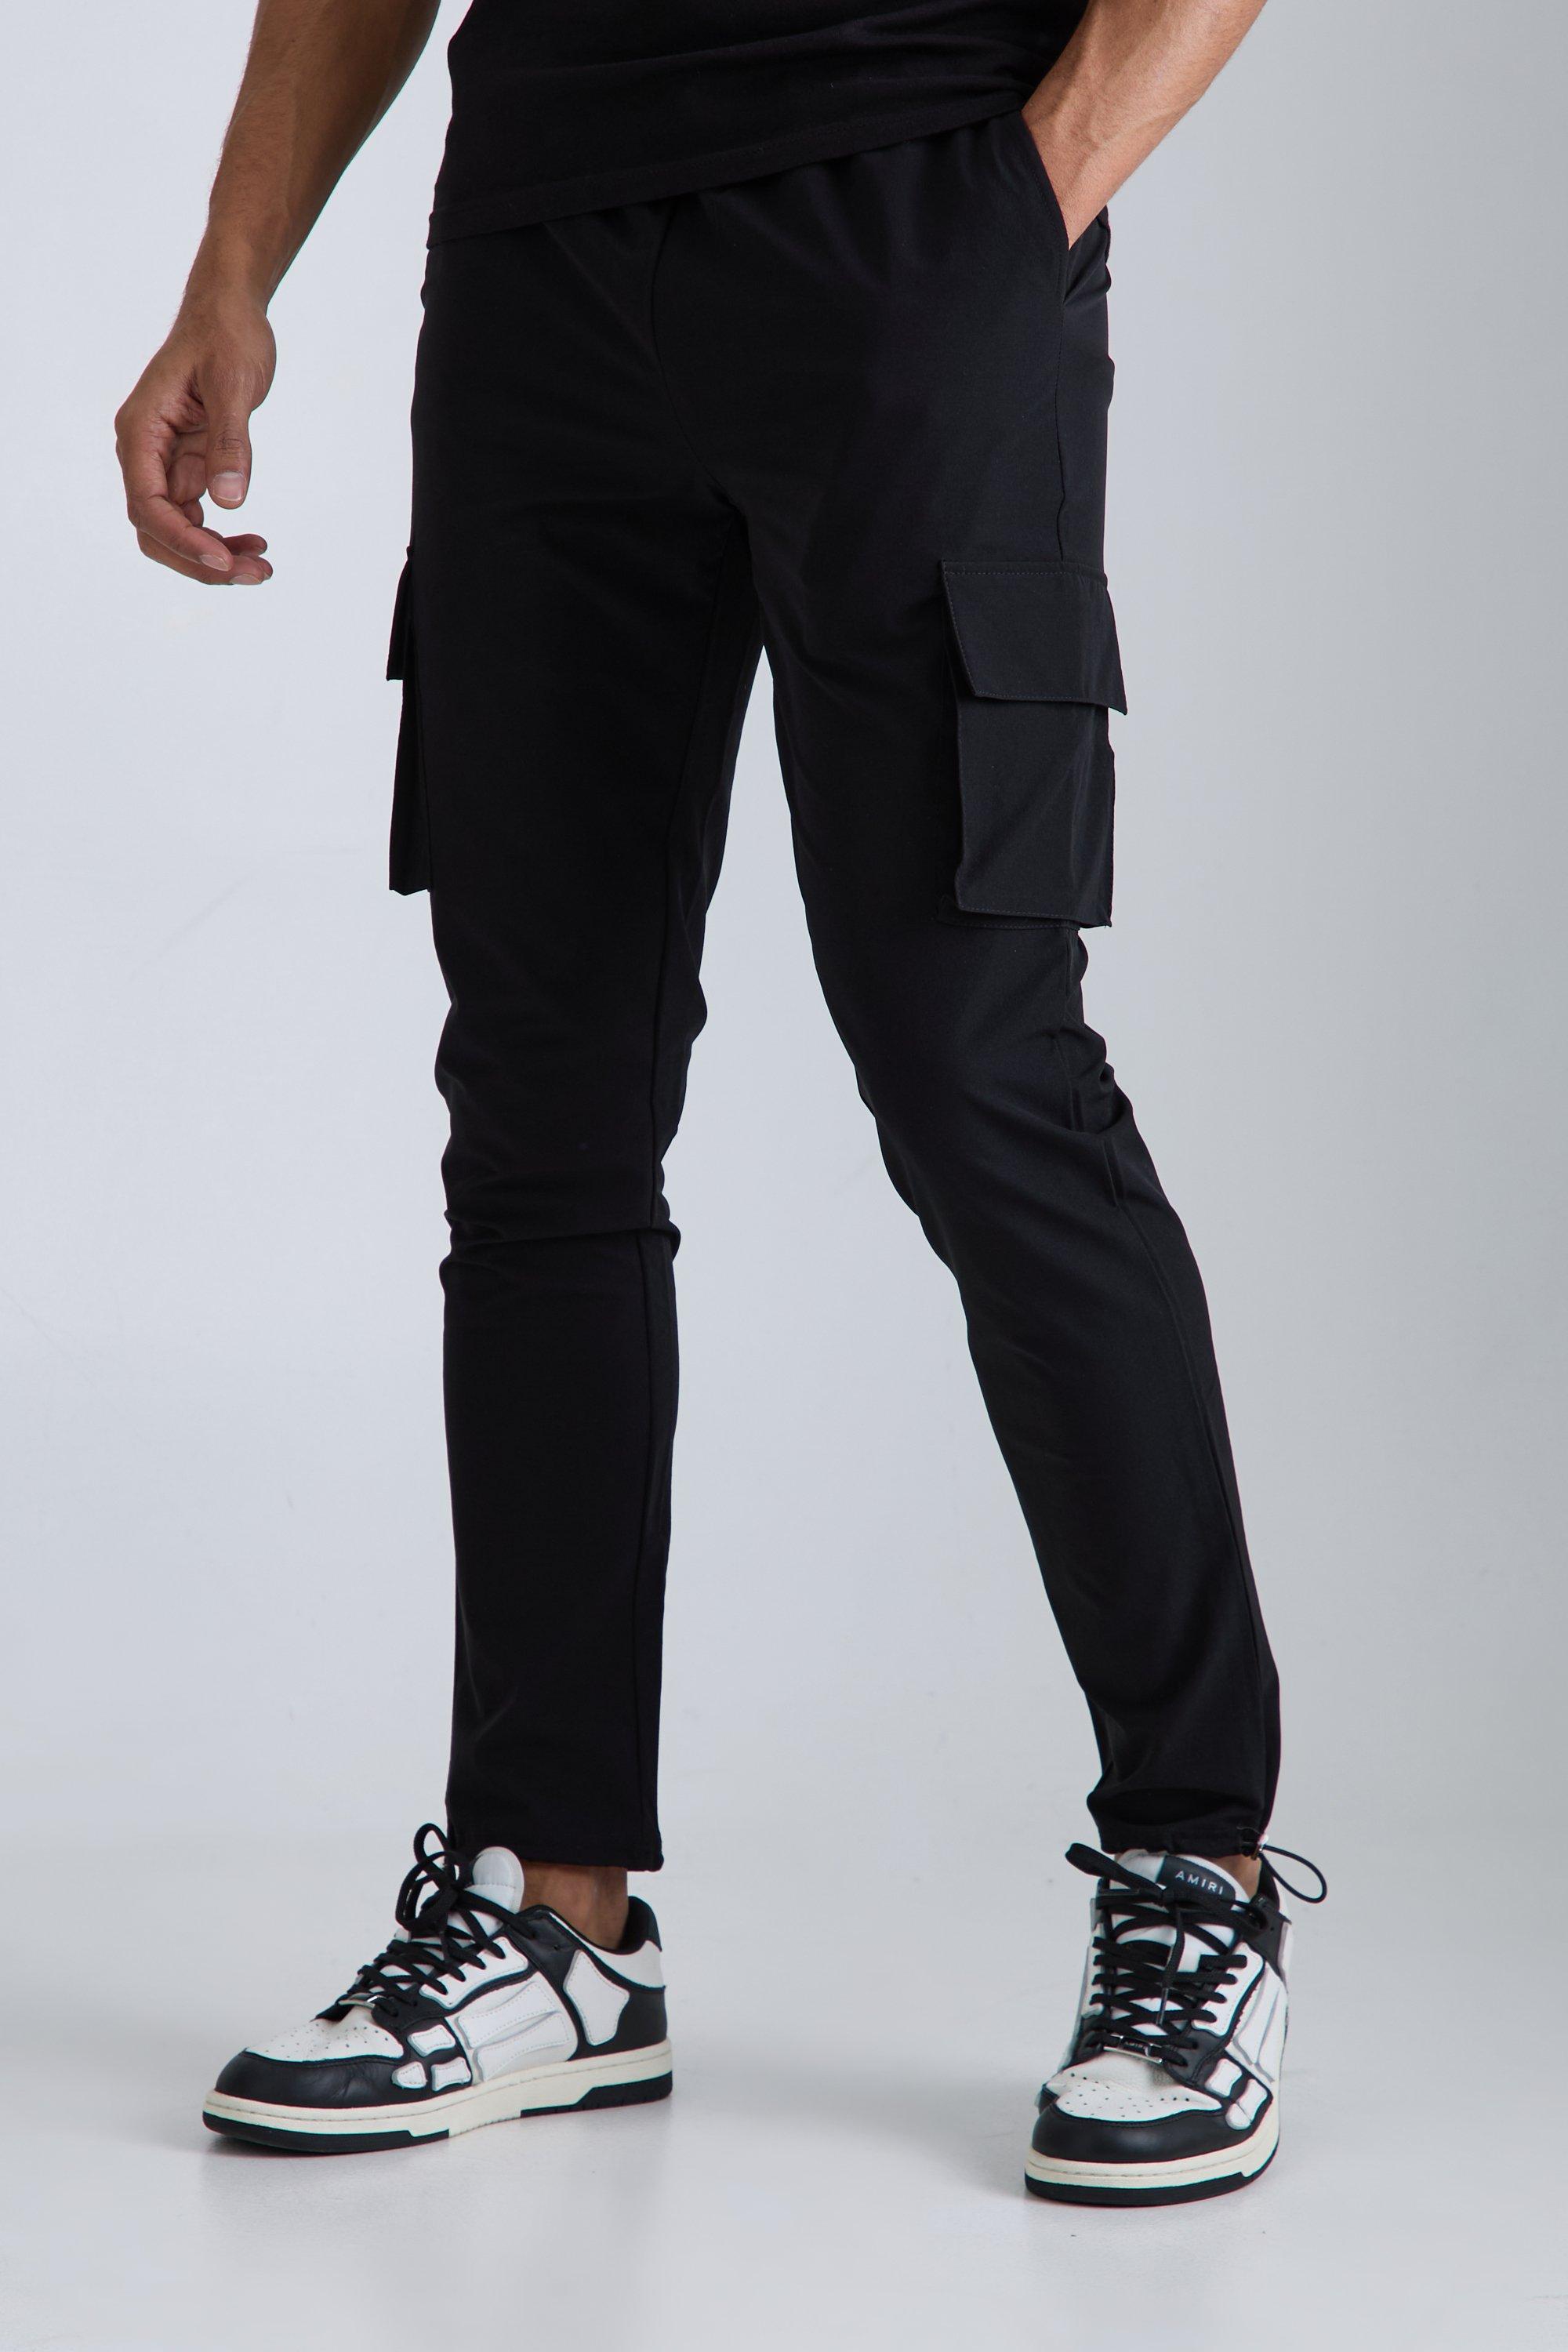 Image of Pantaloni Cargo Skinny Fit in Stretch tecnico leggero elasticizzato, Nero